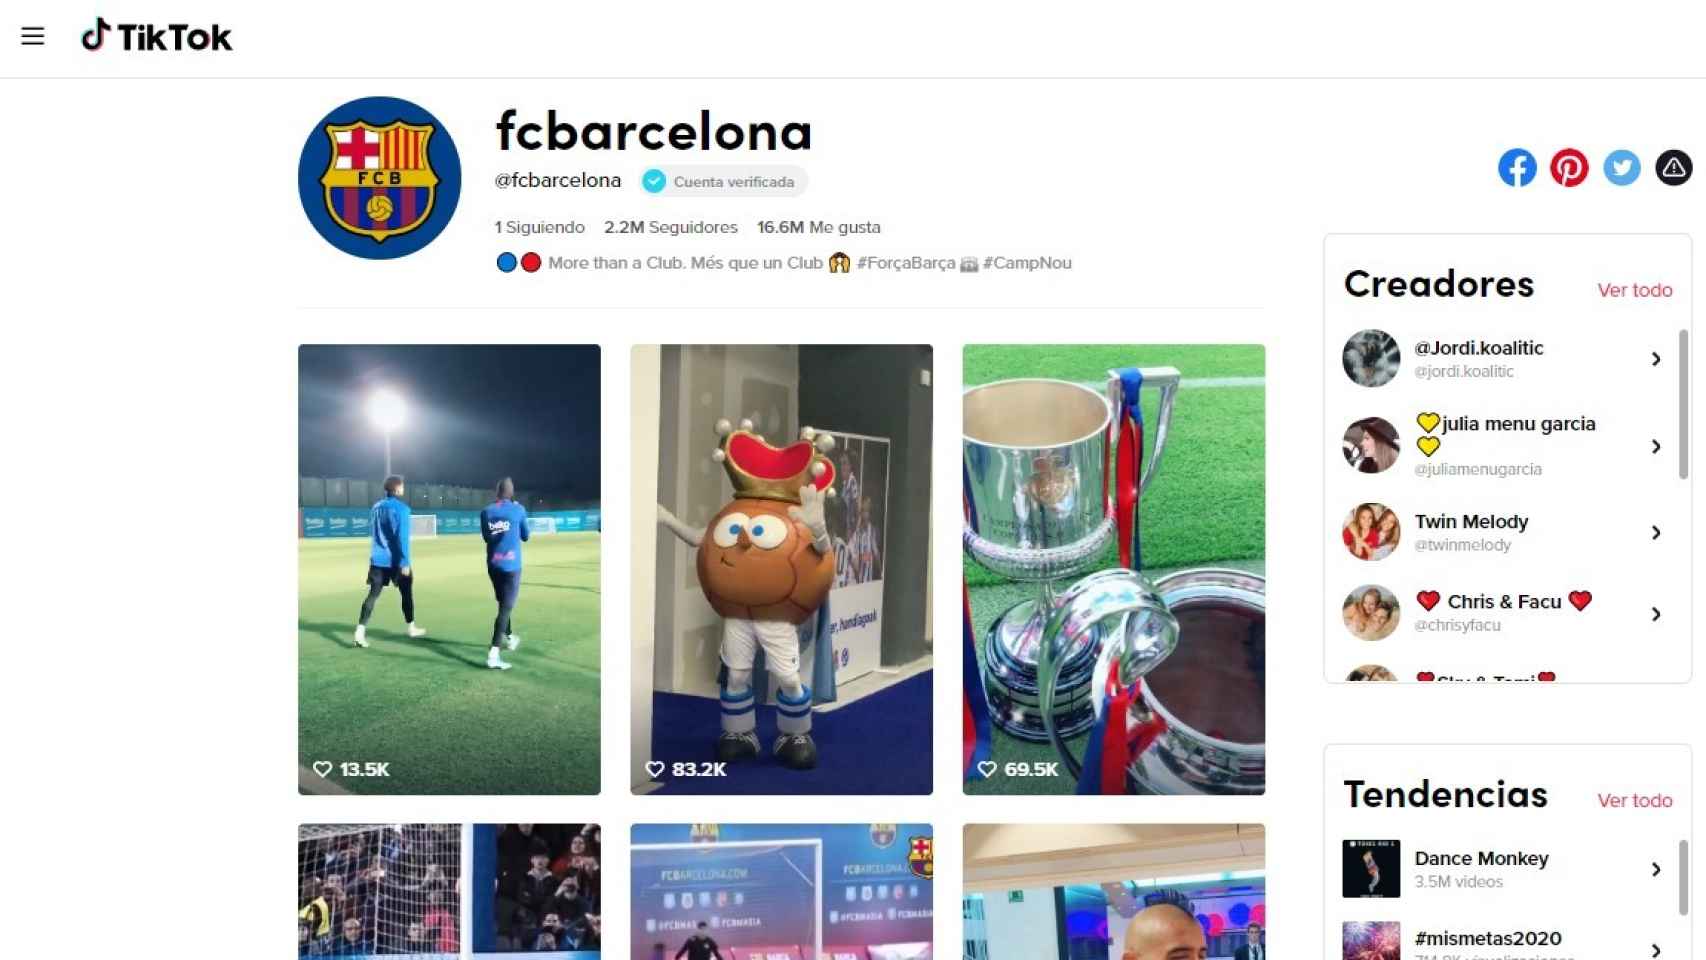 Equipos de fútbol como el FC Barcelona son un ejemplo de marcas que pueden lograr su emplazamiento con éxito.